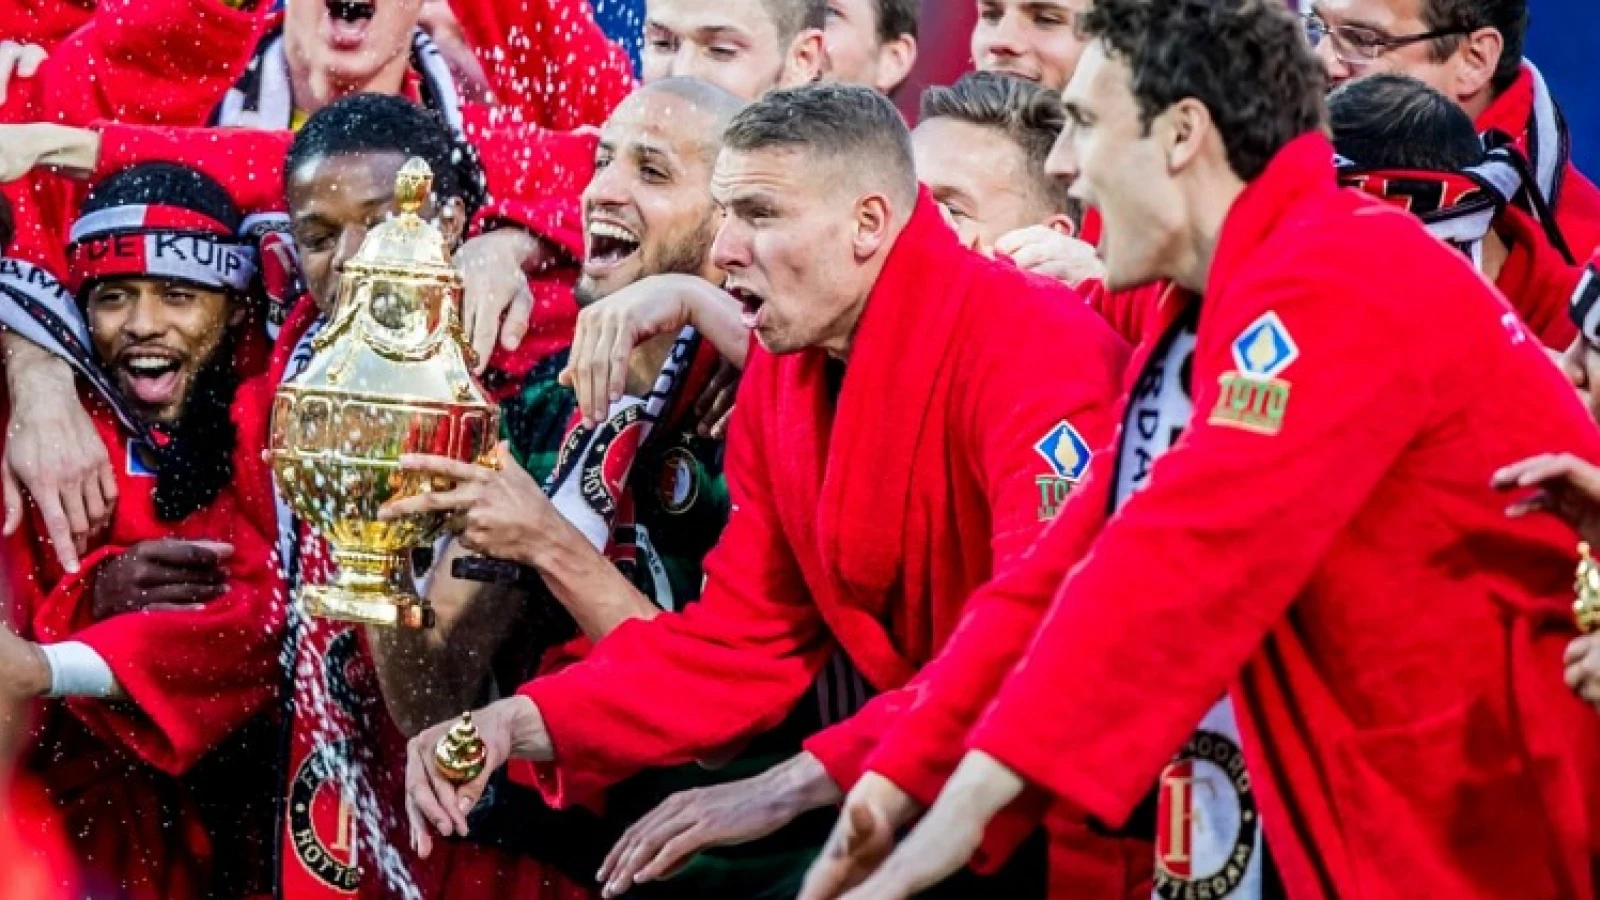 TERUGBLIK #2 | Feyenoord wint bekerfinale van AZ en pakt vierde prijs in drie jaar